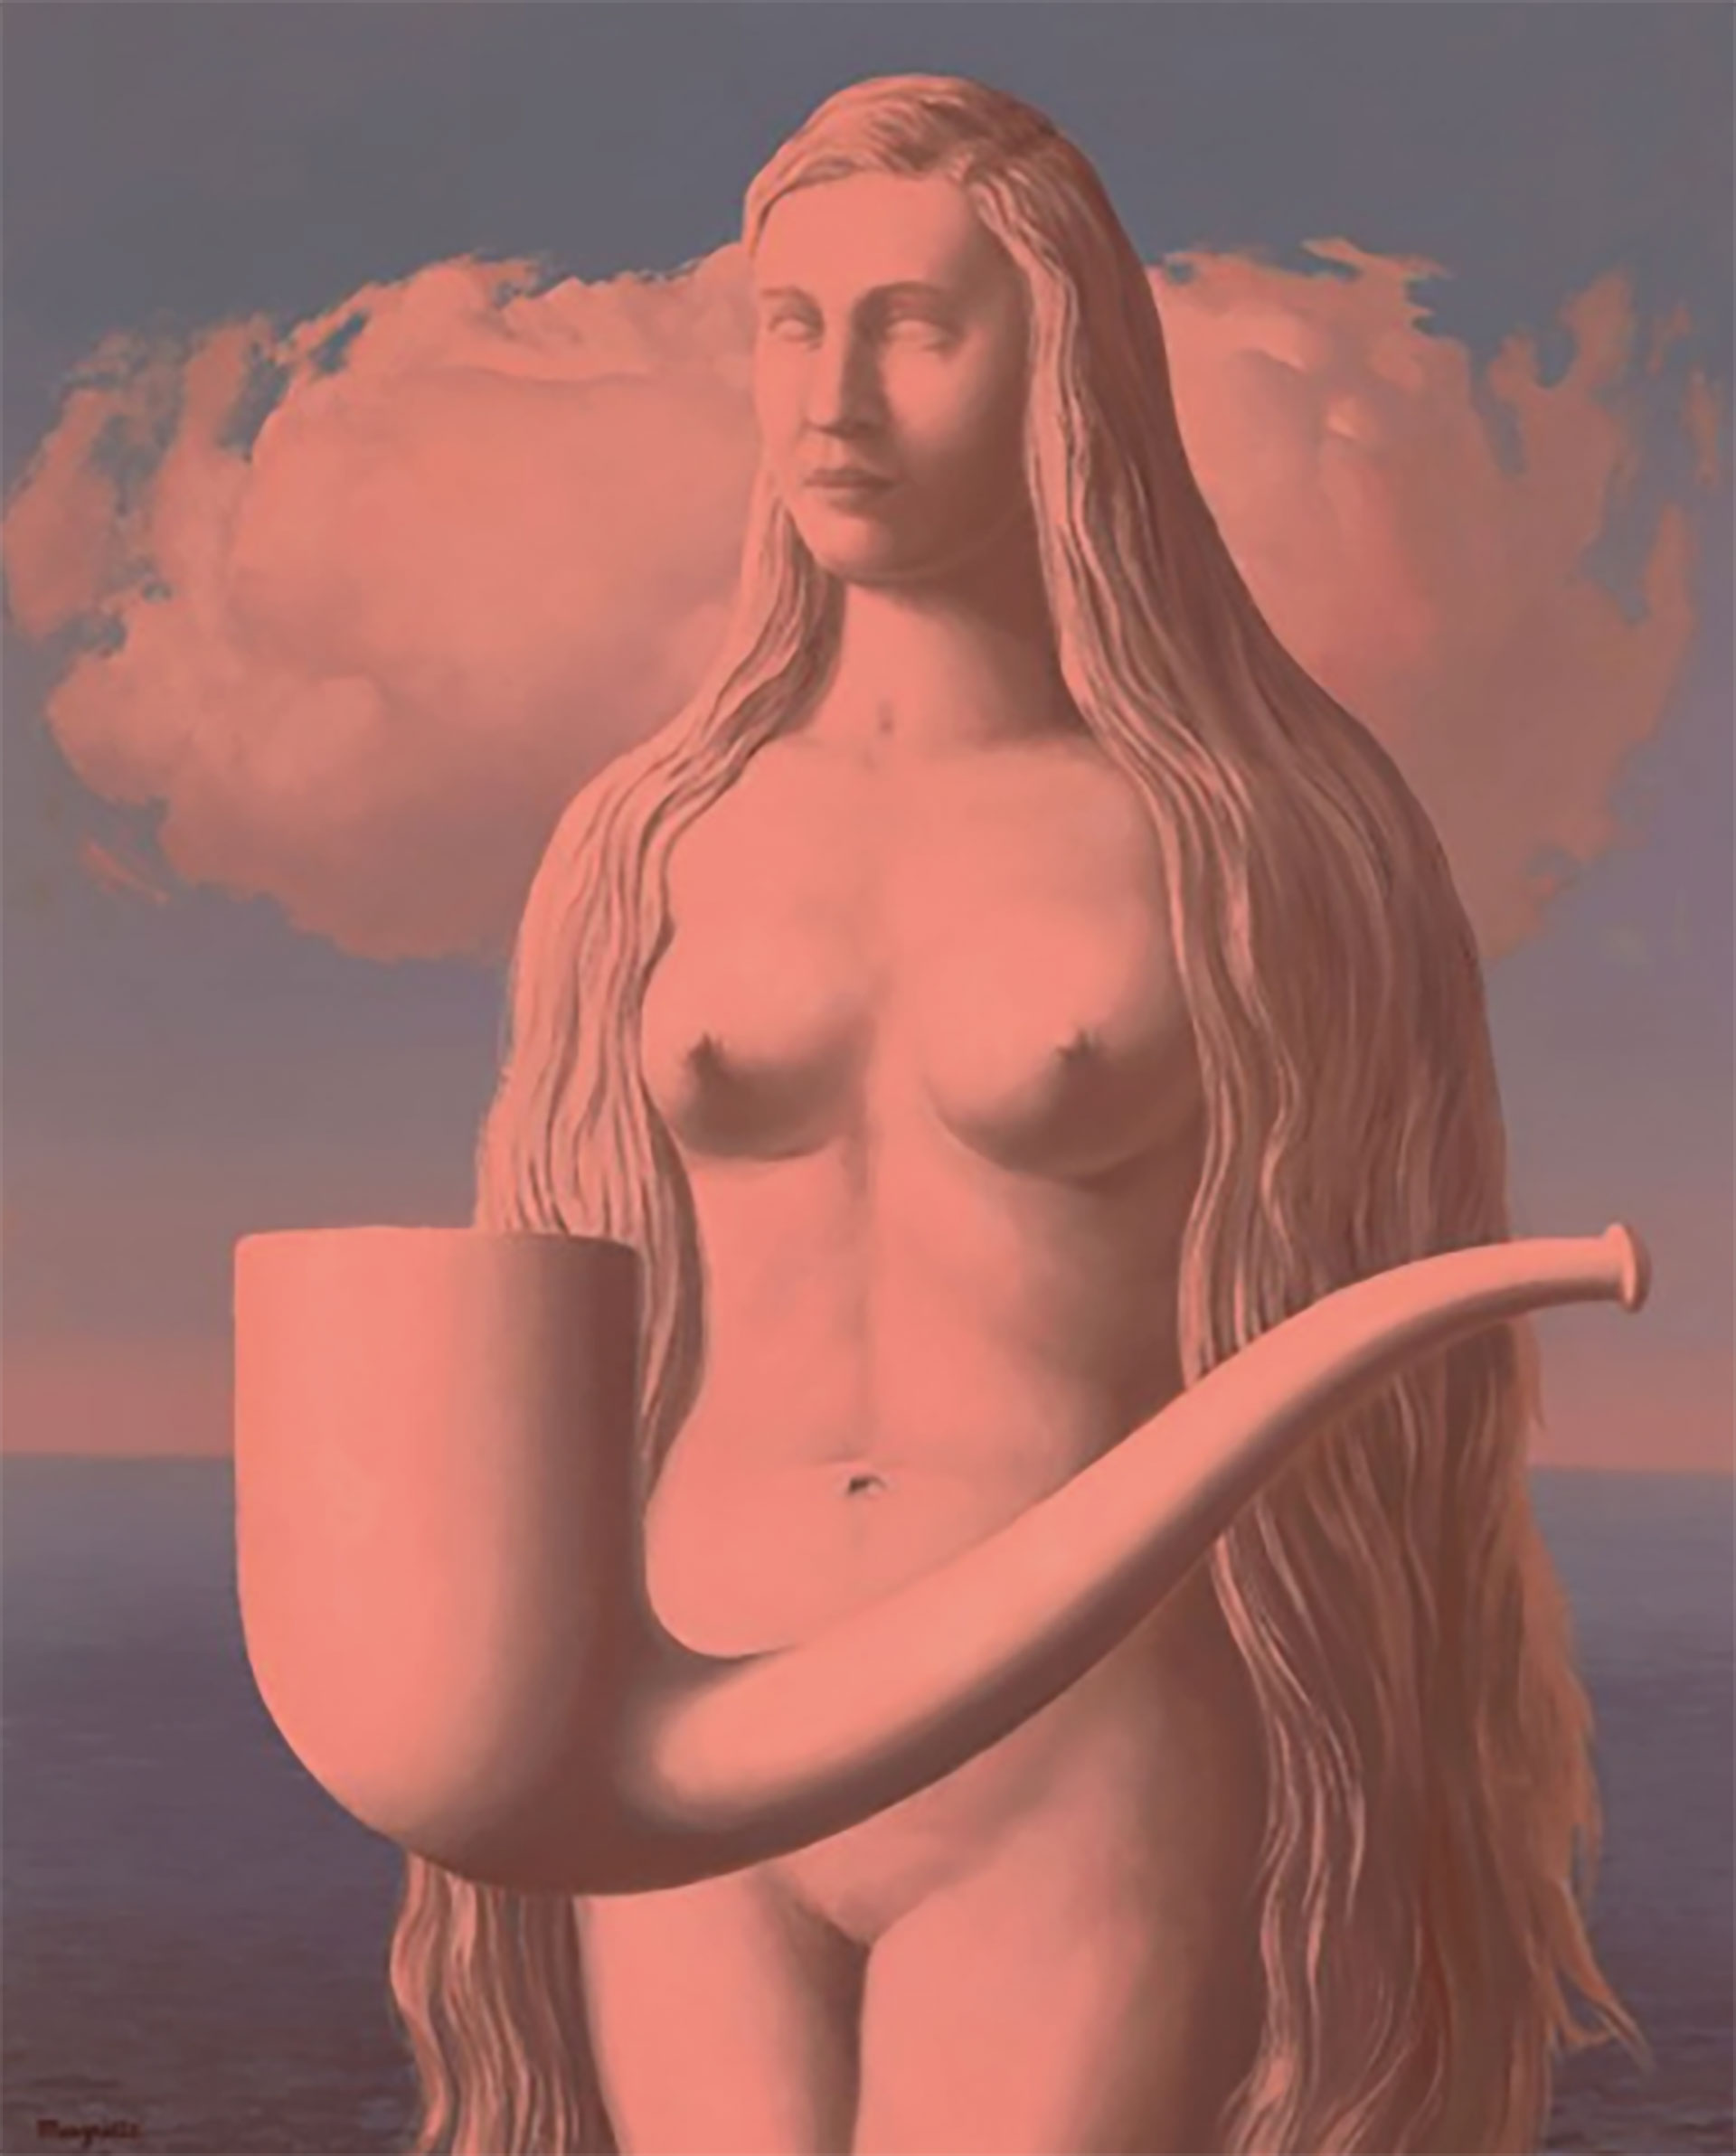 "La masque de la foudre", de René Magritte, alcanzó 4,48 millones de libras en la subasta de Christie's